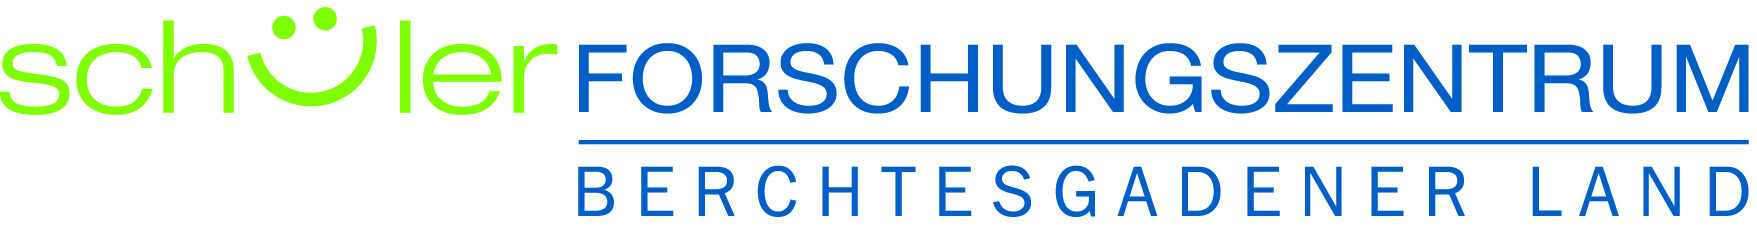 Logo Schülerforschungszentrum Berchtesgadener Land